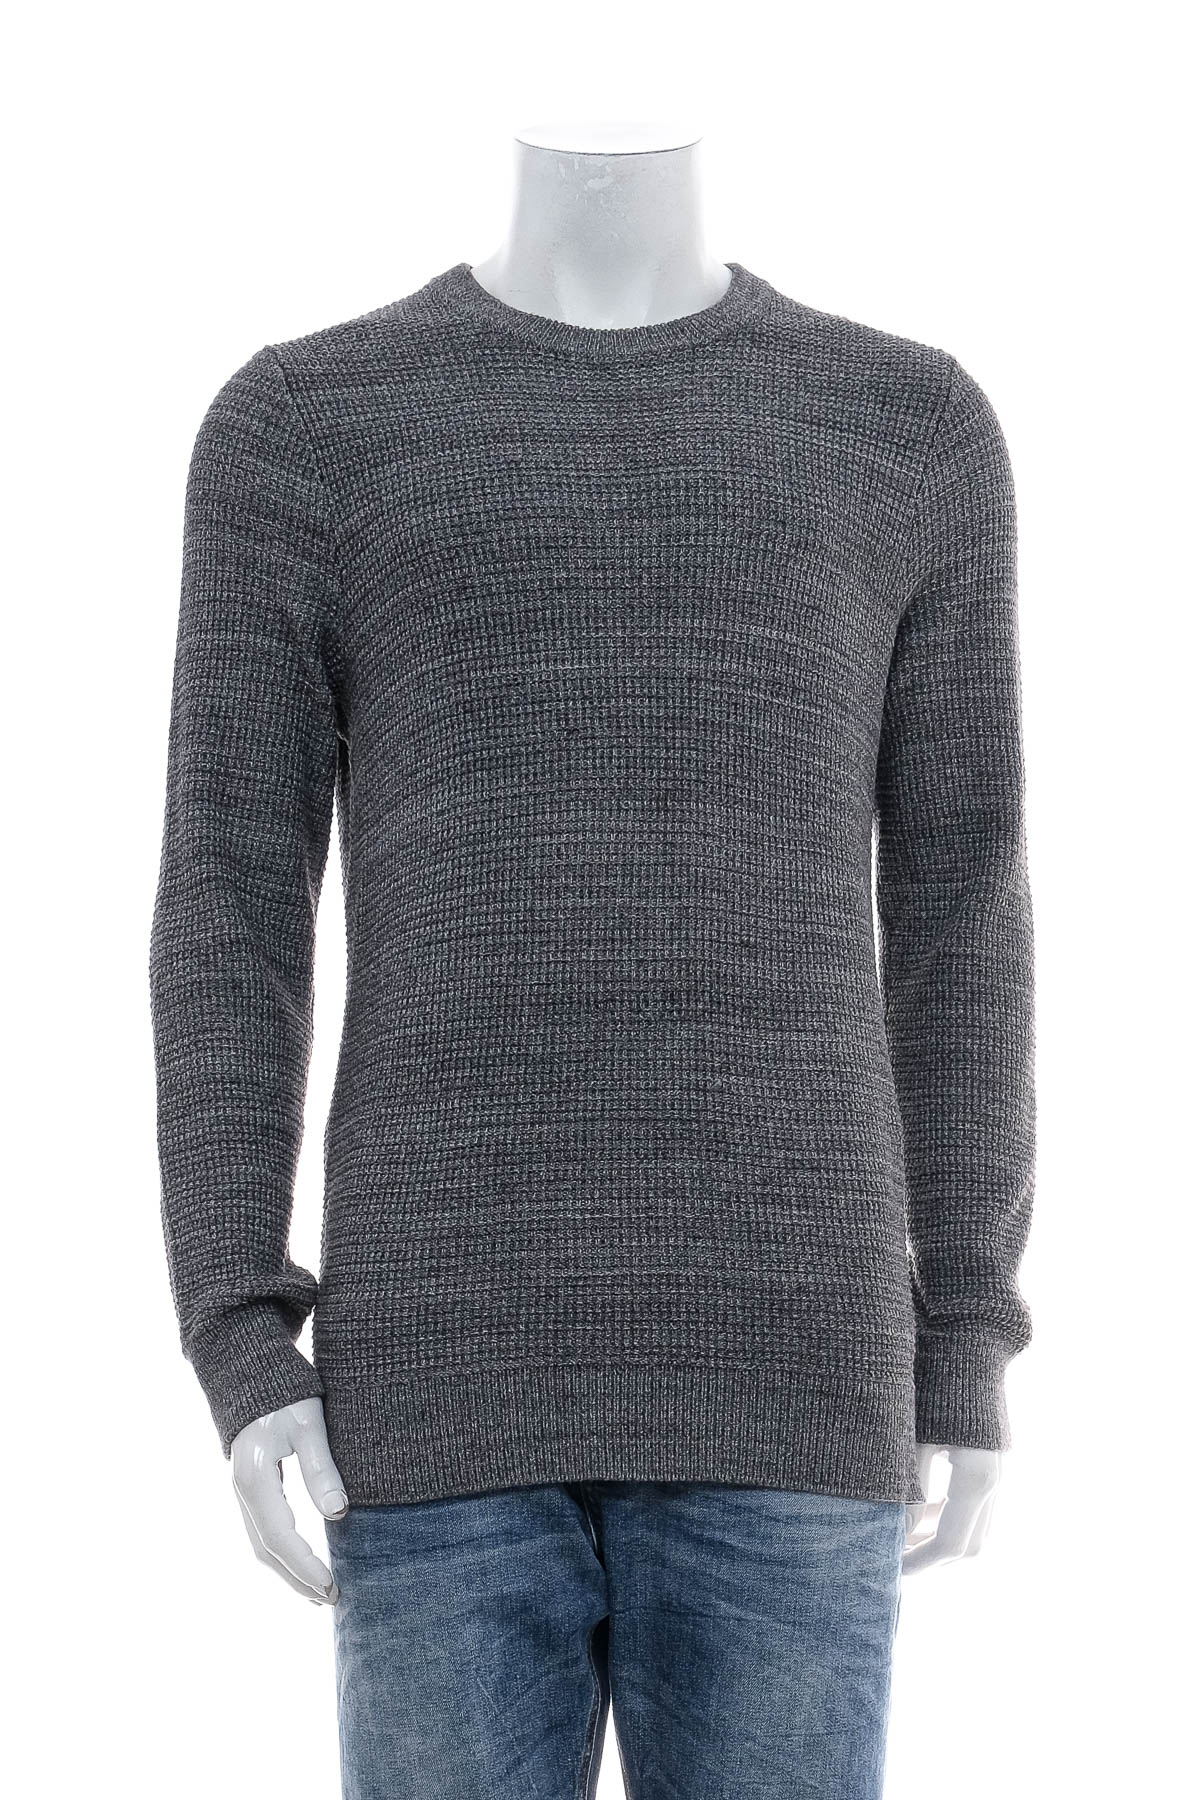 Men's sweater - H&M - 0